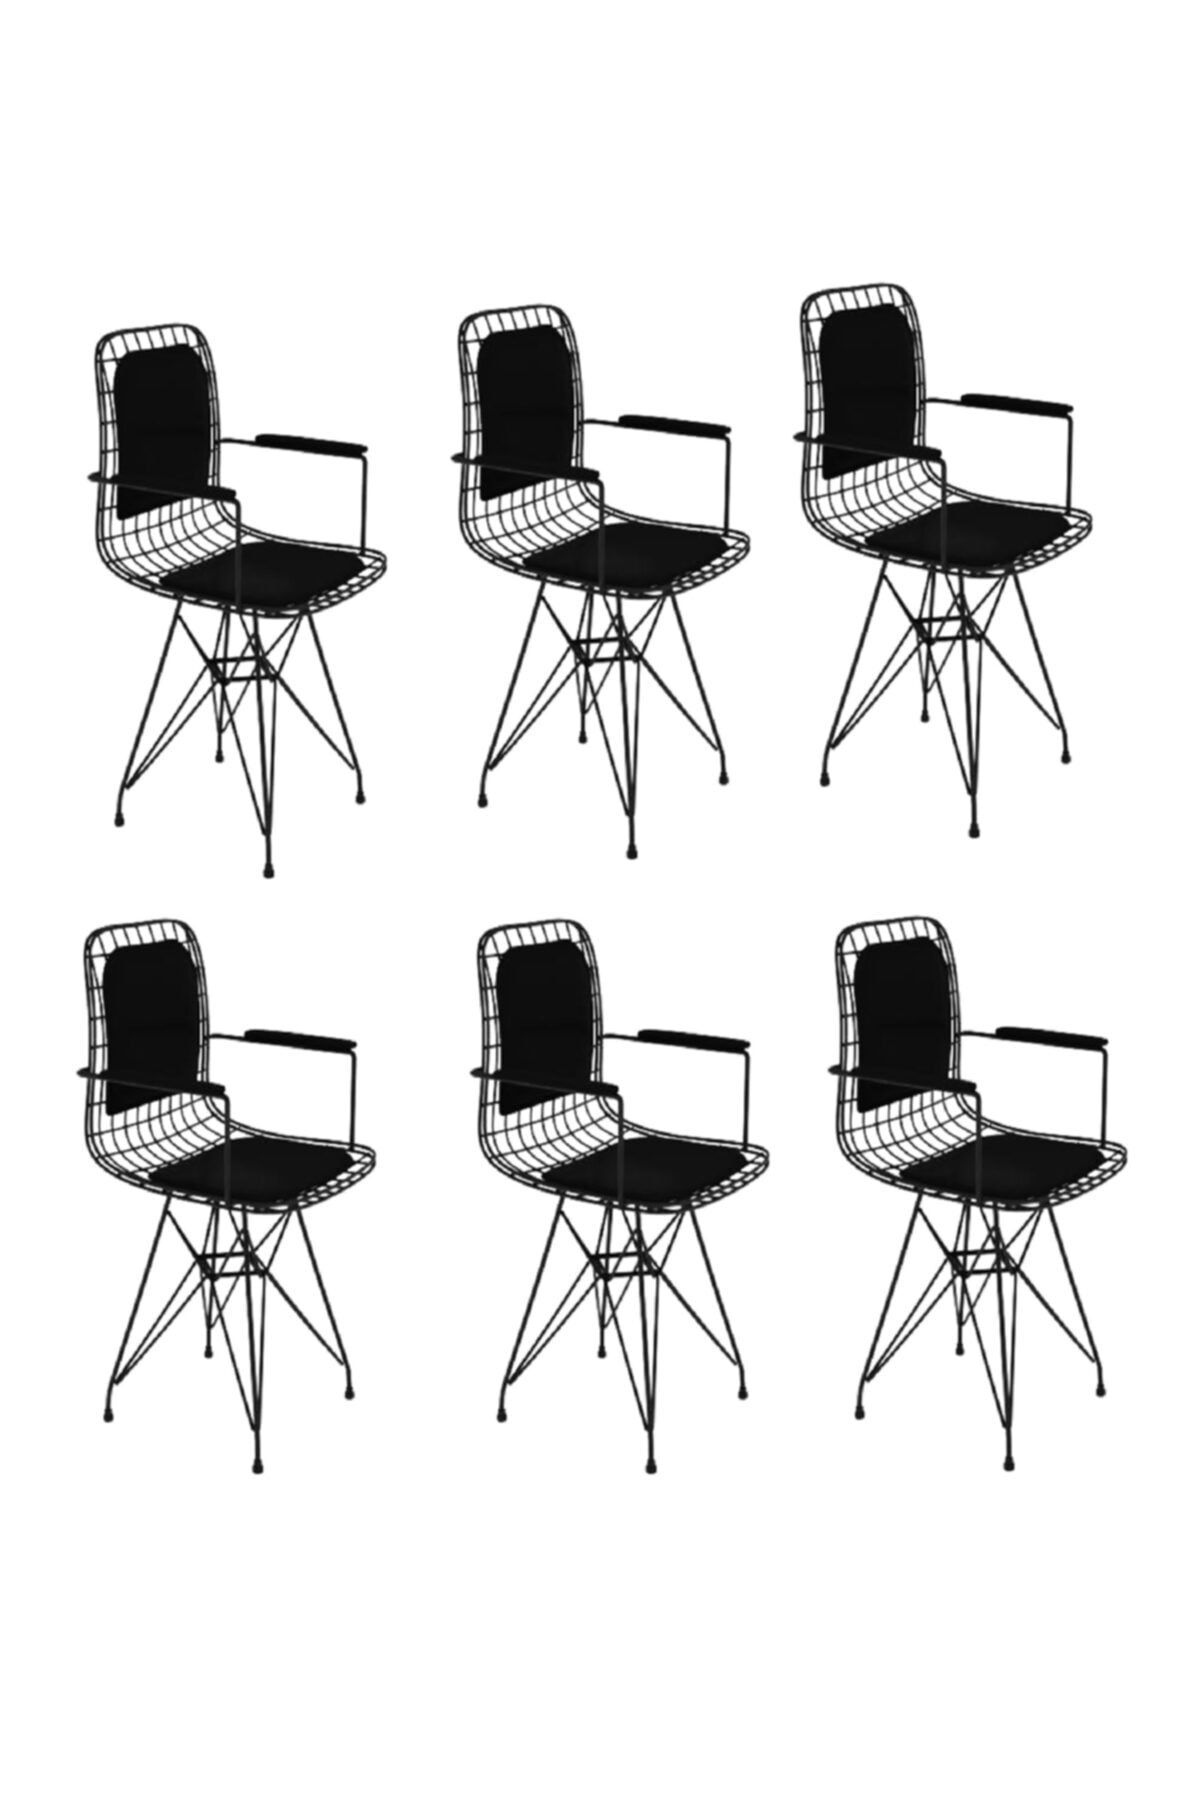 Kenzlife Knsz kafes tel sandalyesi 6 lı mazlum syhsyh kolçaklı sırt minderli ofis cafe bahçe mutfak